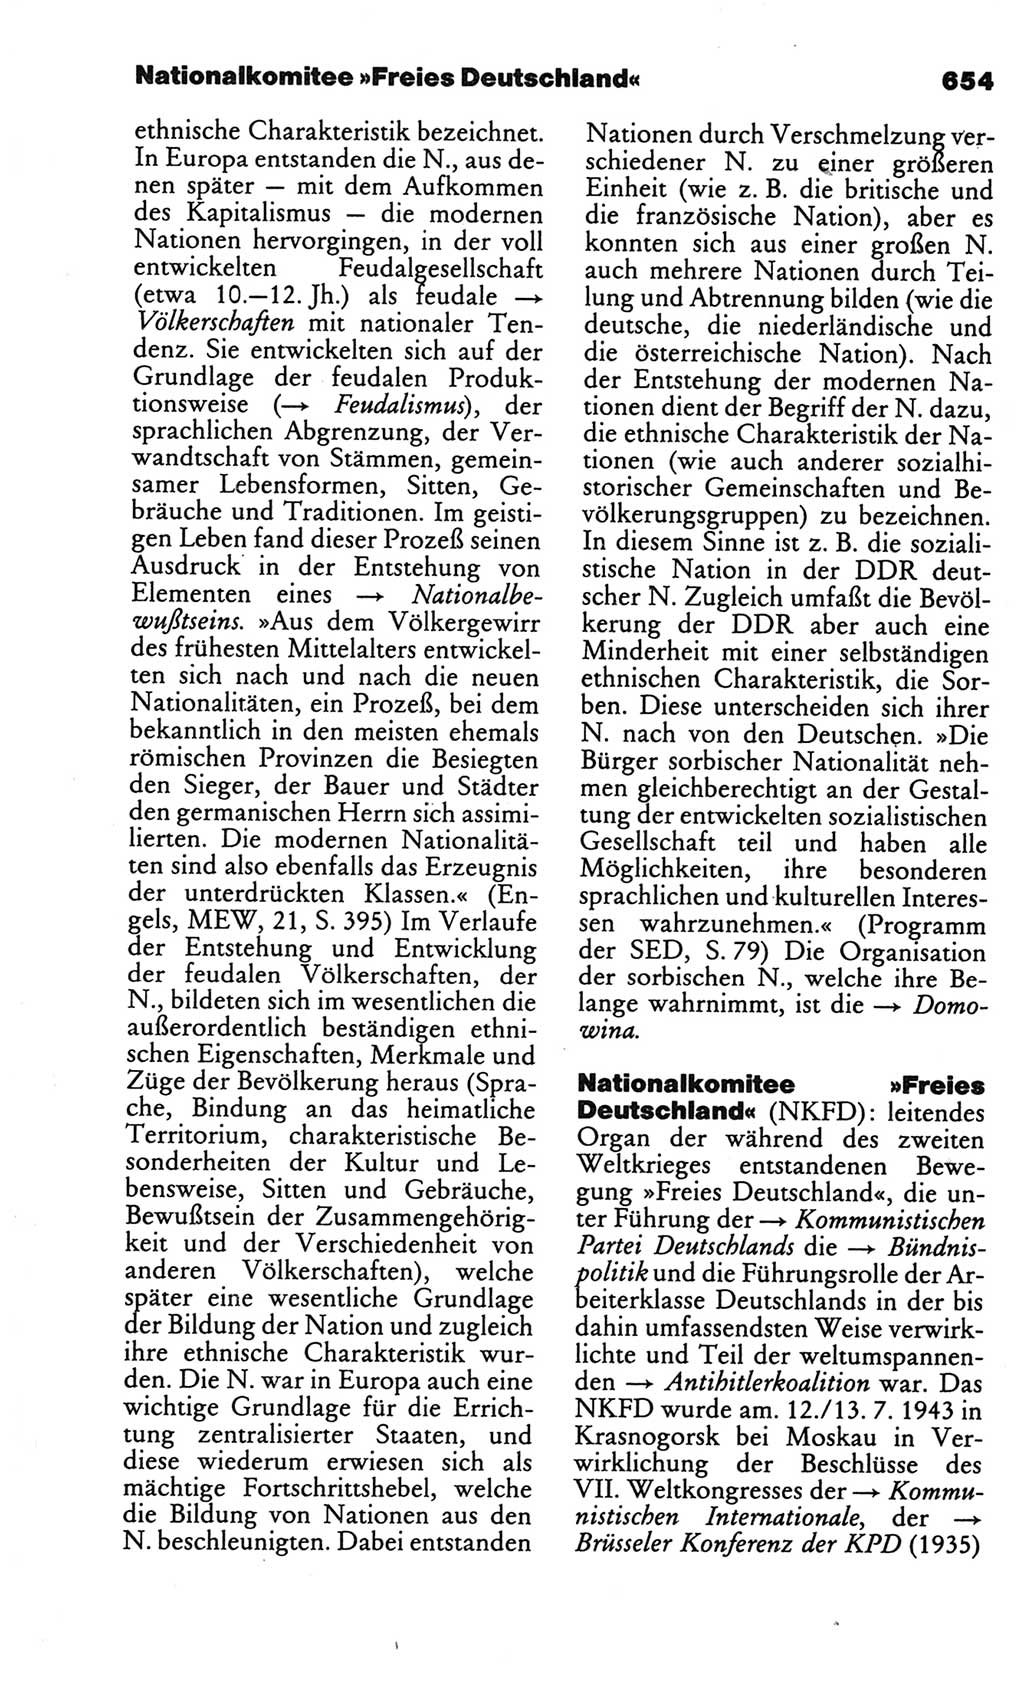 Kleines politisches Wörterbuch [Deutsche Demokratische Republik (DDR)] 1986, Seite 654 (Kl. pol. Wb. DDR 1986, S. 654)